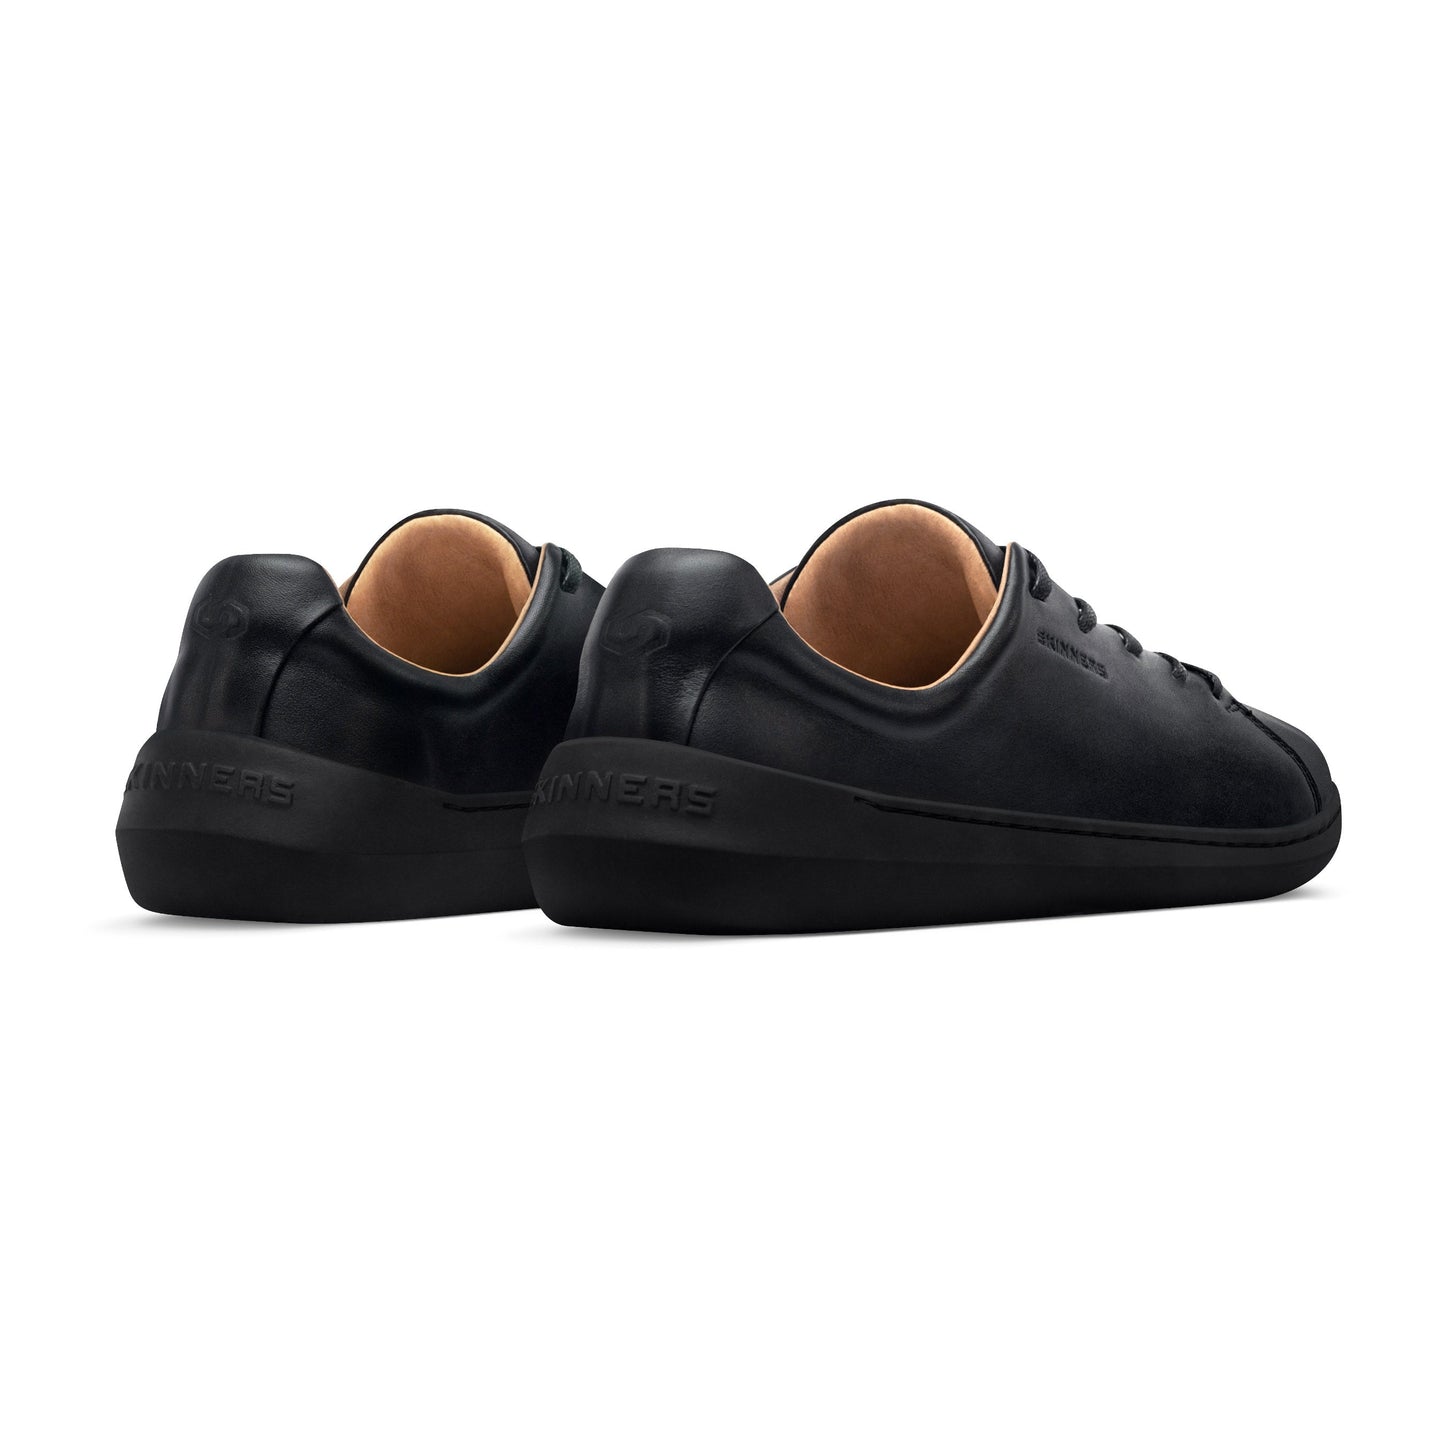 Mærkbare Walker barfods sneakers til kvinder og mænd i farven black / black, bagfra